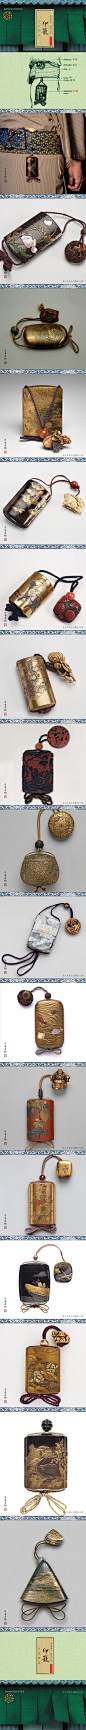 印籠 | 印籠最先來源於中國，顧名思義就是放印章的漆器。因傳統和服沒有有袋子，所以江戶時代的武士通過根付將印籠系在腰上，亦可作裝飾。印籠一般有幾格小抽屜，並以刻紋小球點綴，下端或飾有長錦絳。精致小巧的印籠濃縮了東方藝術和文化，和中國的鼻煙壺一樣，影響了很多藝術設計領域，比如香水。日本蒔繪 · 印籠。日本漆藝的主要裝飾方法，漆面描繪圖像紋樣，撒 (蒔)上金粉、銀粉、銅粉或乾漆粉，再髹塗數道漆，經研磨表現金銀圖樣光輝熠熠華麗的裝飾技法。其源自中國平脫技法。漆藝在日本占有突出地位,幾乎成為日本傳統工藝的標誌。